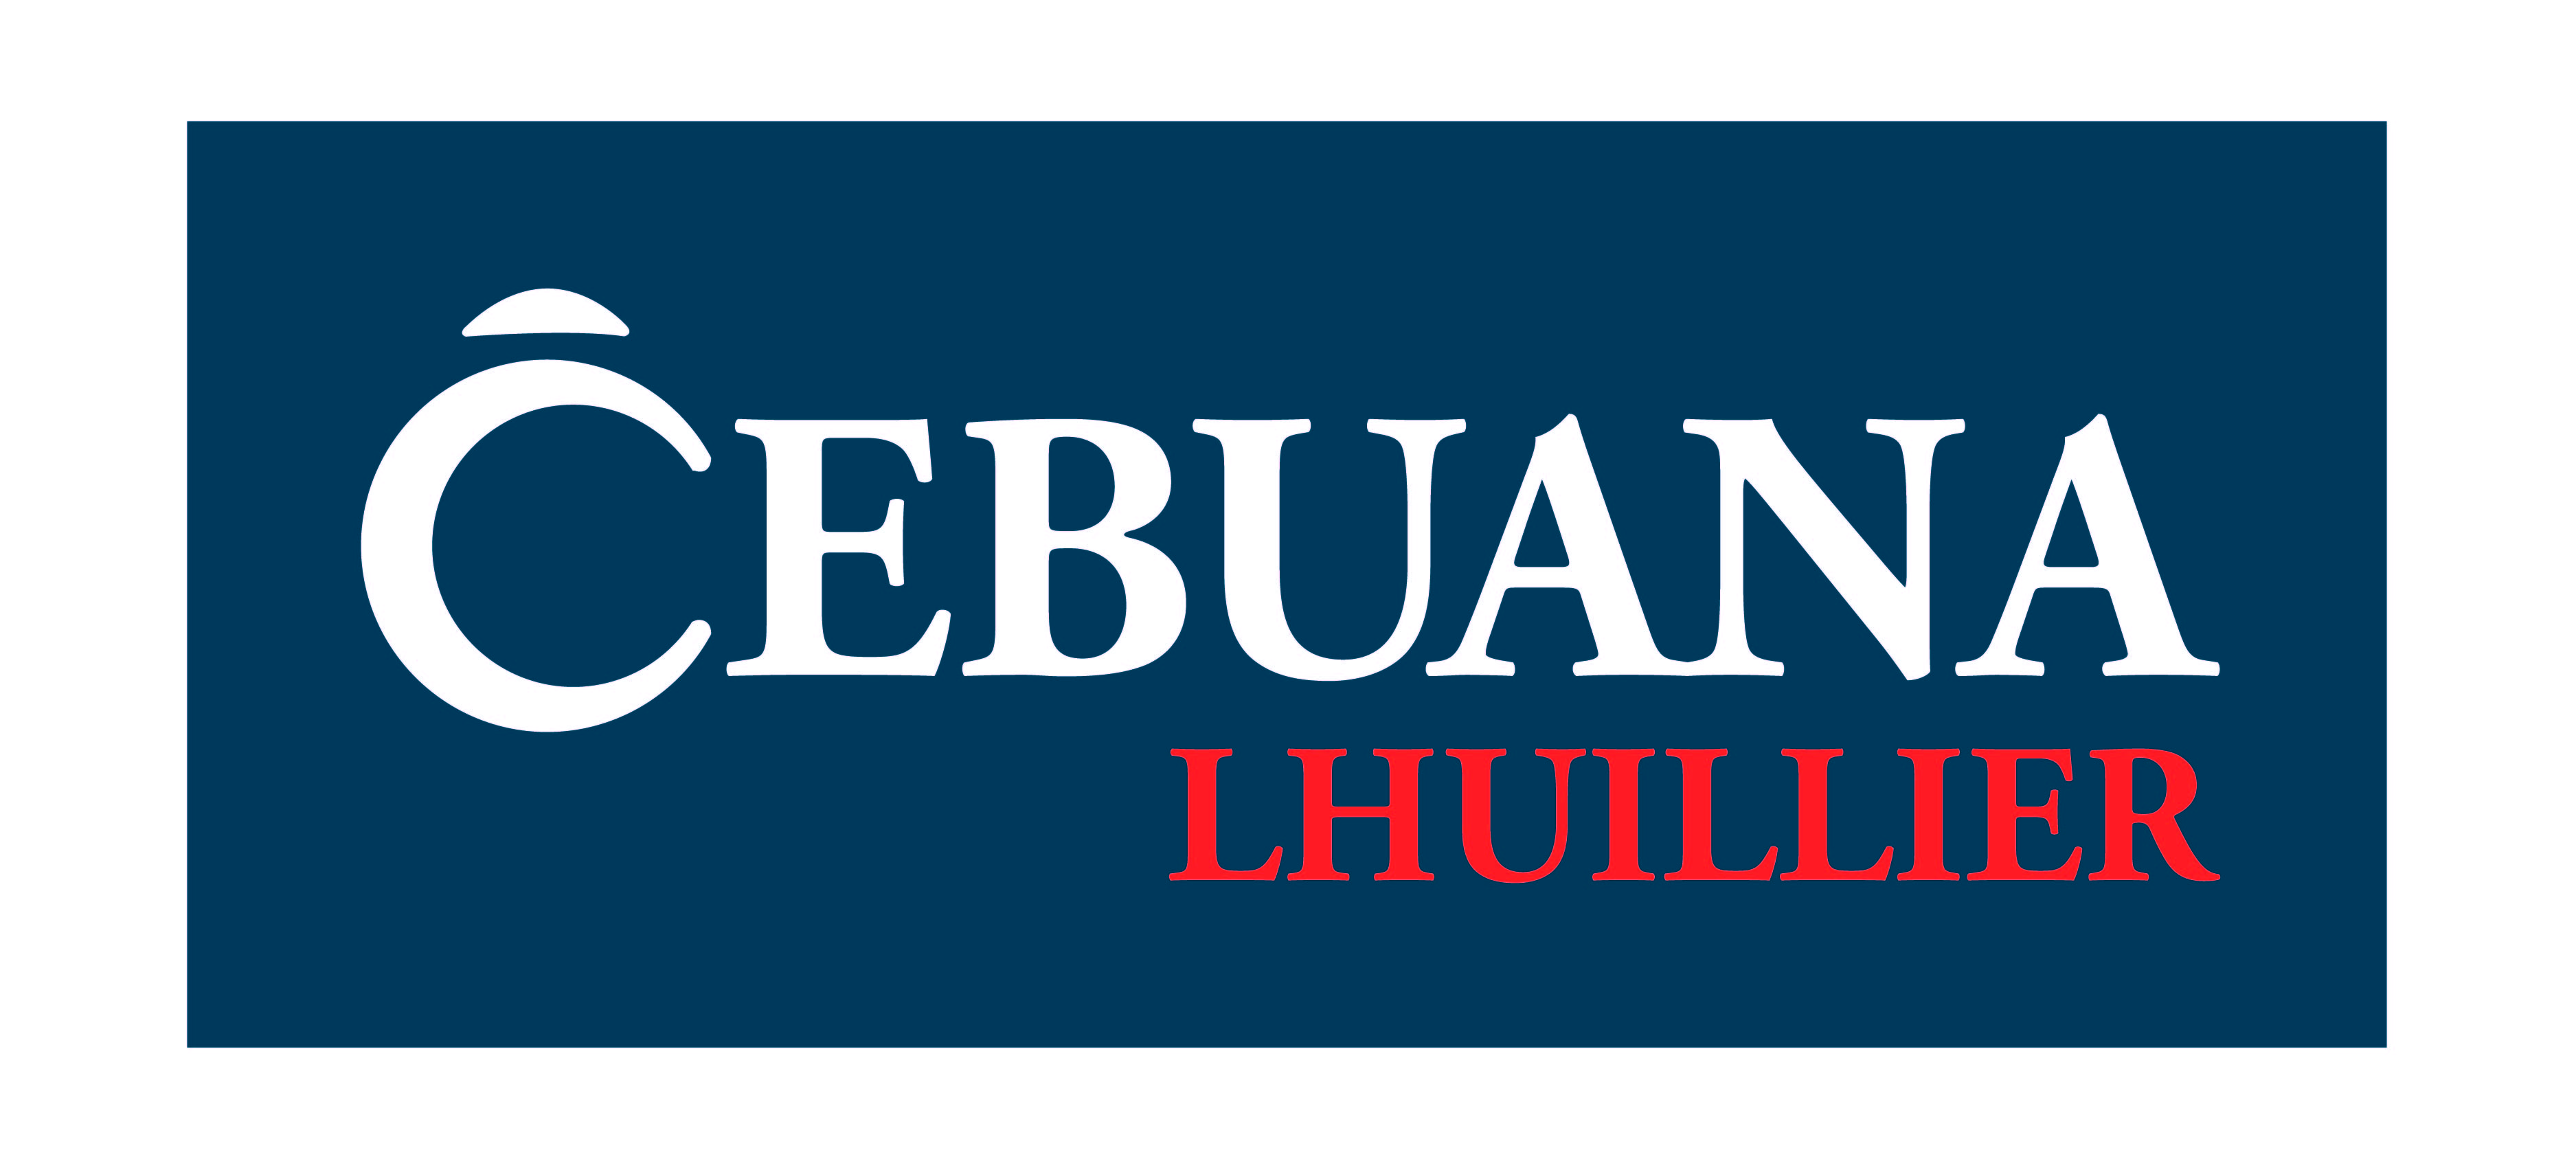 Cebuana_Lhuillier_offficial_Logo.jpg